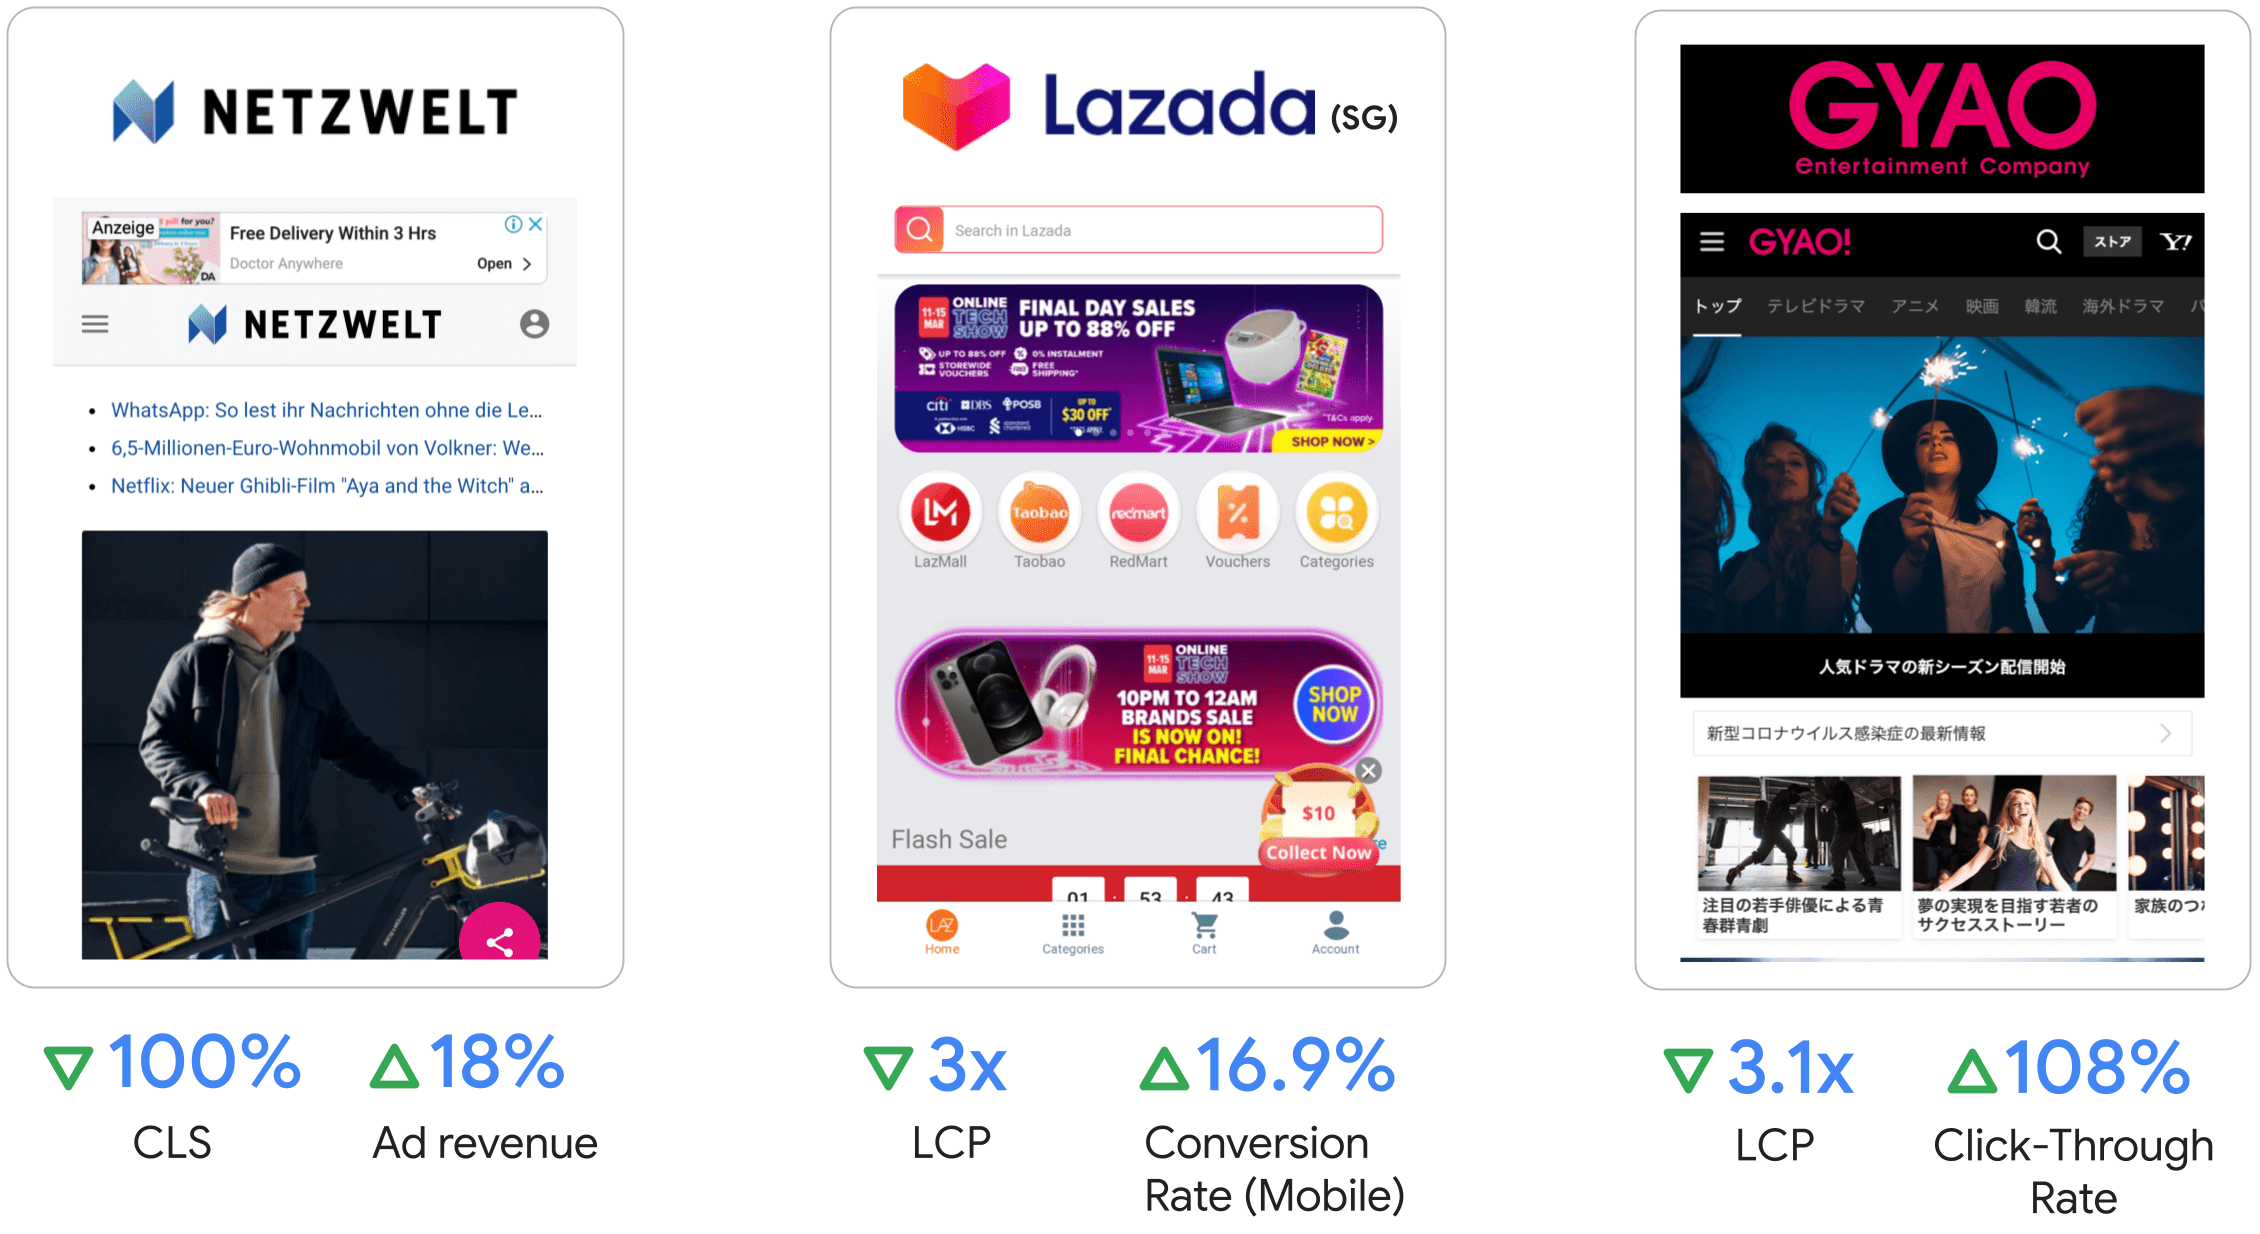 Netzwelt شاهد افزایش 18 درصدی درآمد تبلیغات، Lazada با 3 برابر LCP و 16.9 درصد افزایش در نرخ تبدیل در تلفن همراه، GYAO شاهد 3.1 برابر LCP و 108 درصد بهبود در نرخ کلیک شد.